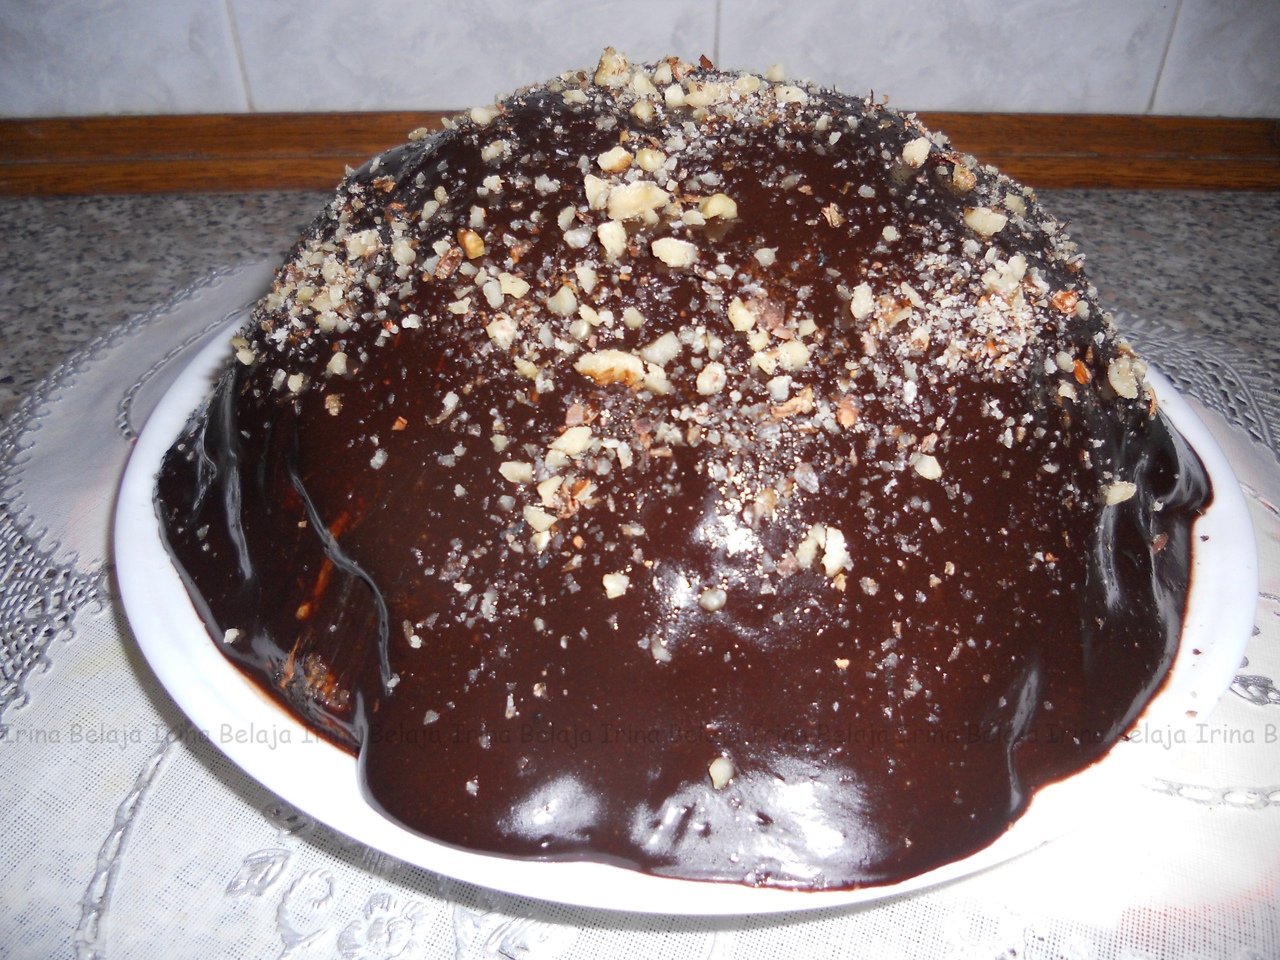 Шоколадный торт черный принц